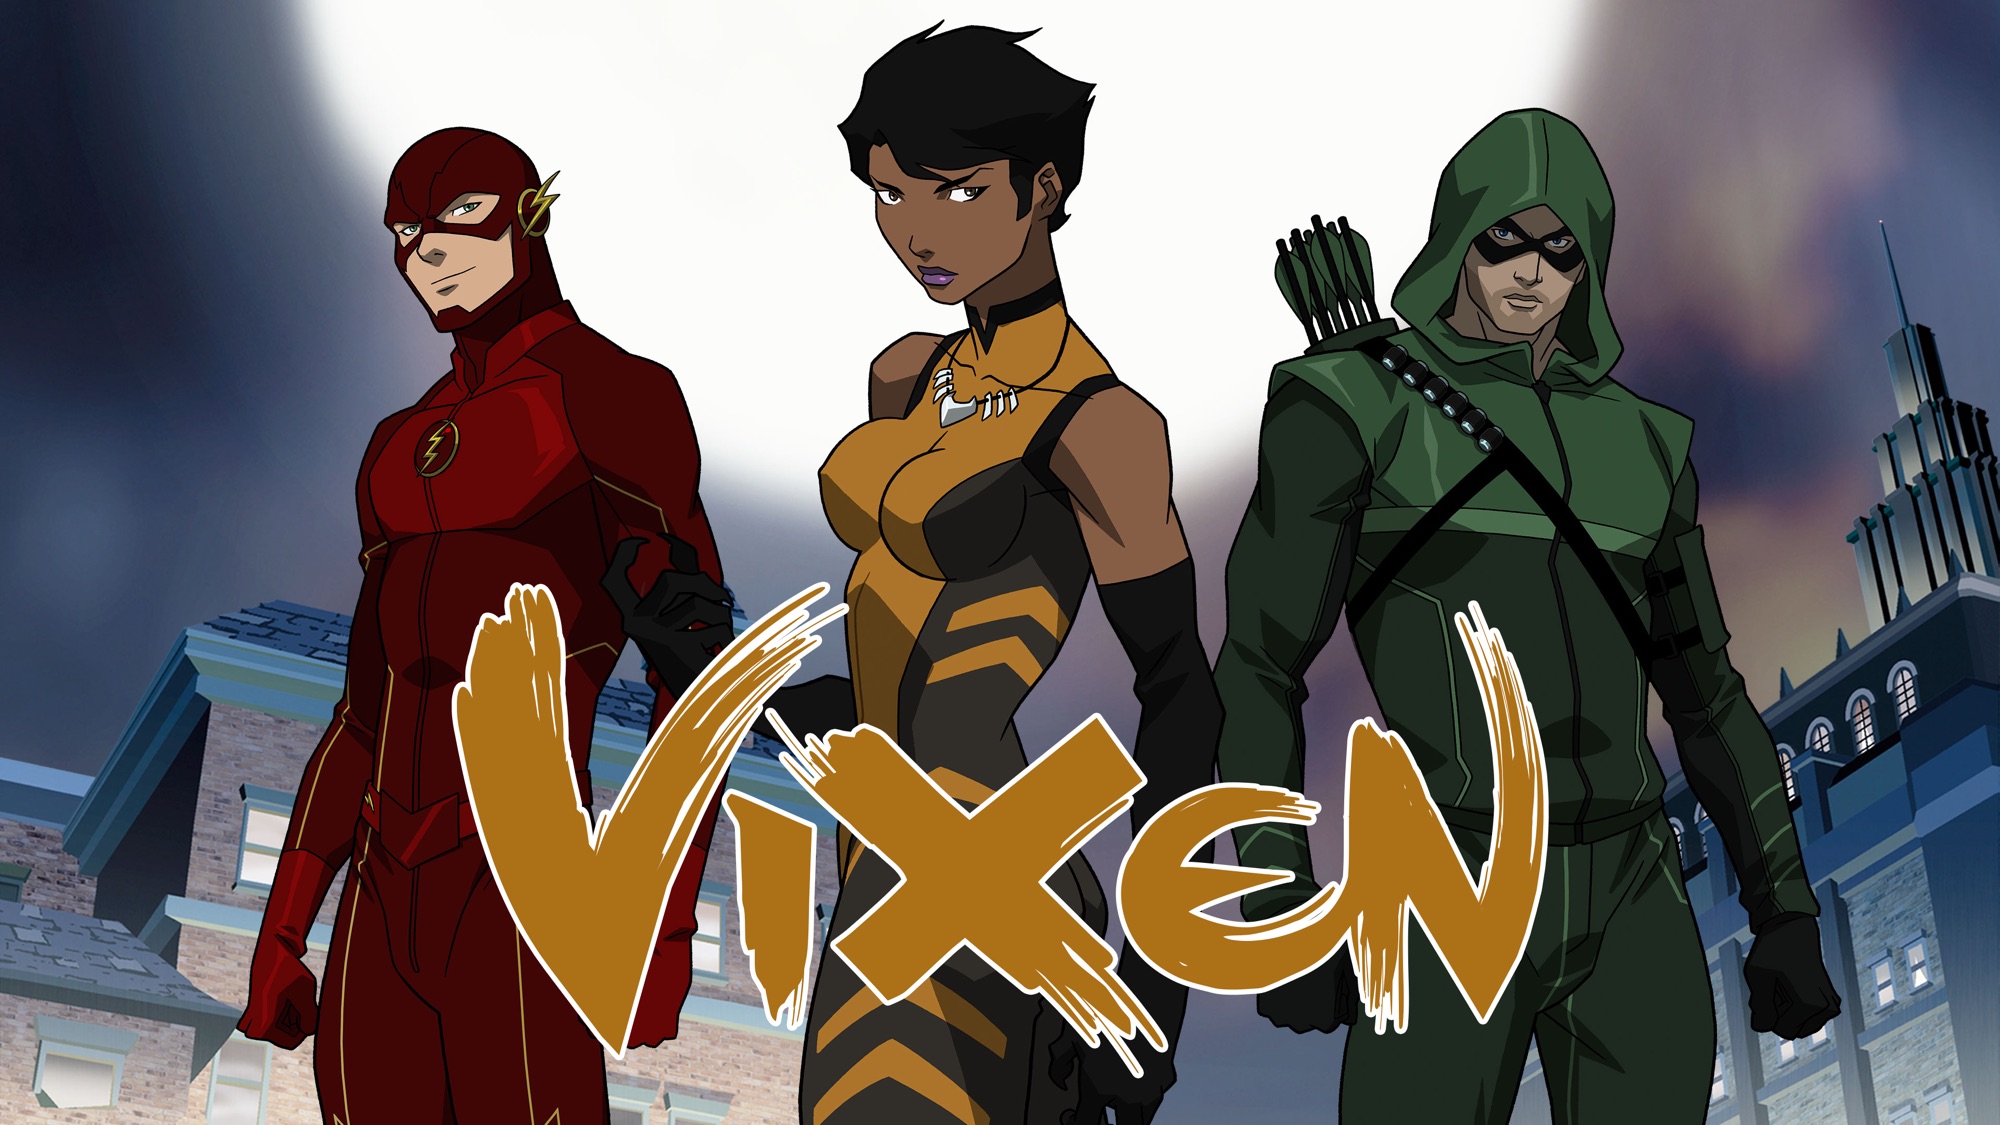 31 Vixen (DC Comics) Pictures - Image Abyss